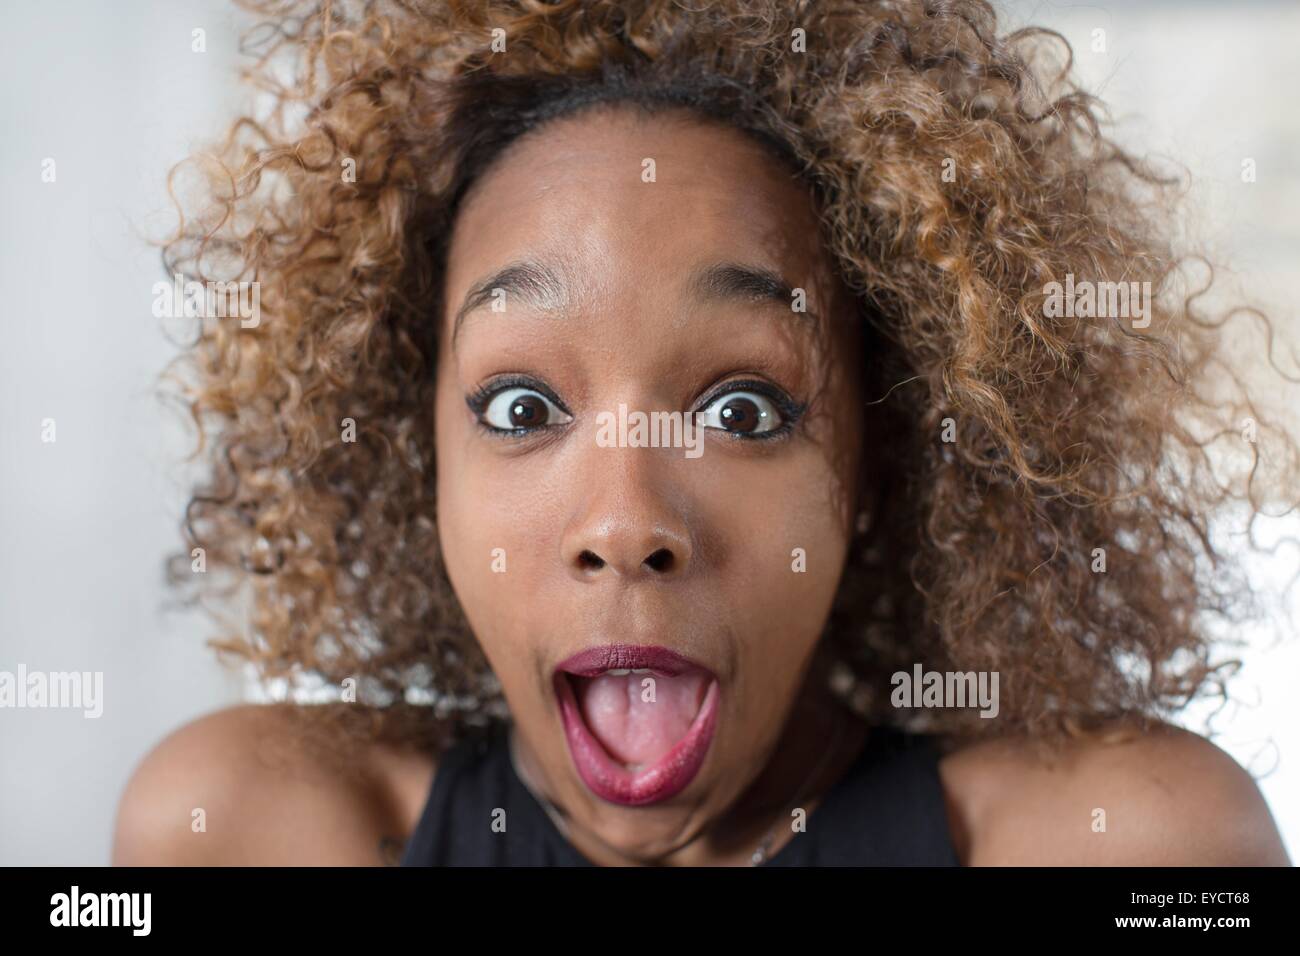 Retrato De Mujer Joven Tirando De Una Cara Con La Boca Abierta Fotografía De Stock Alamy 